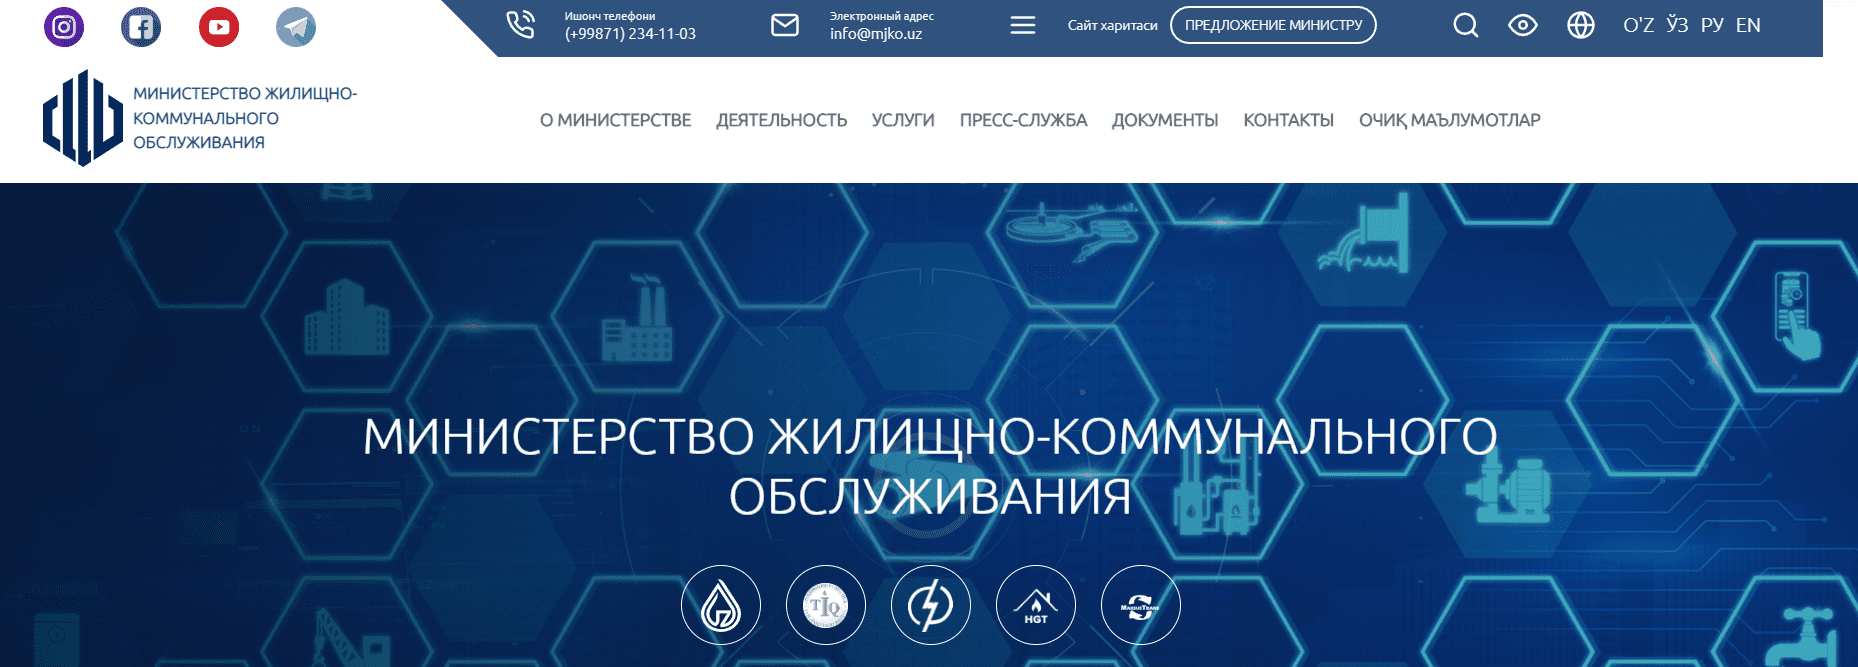 Министерство жилищно-коммунального обслуживания уз (kommunal.uz) – официальный сайт